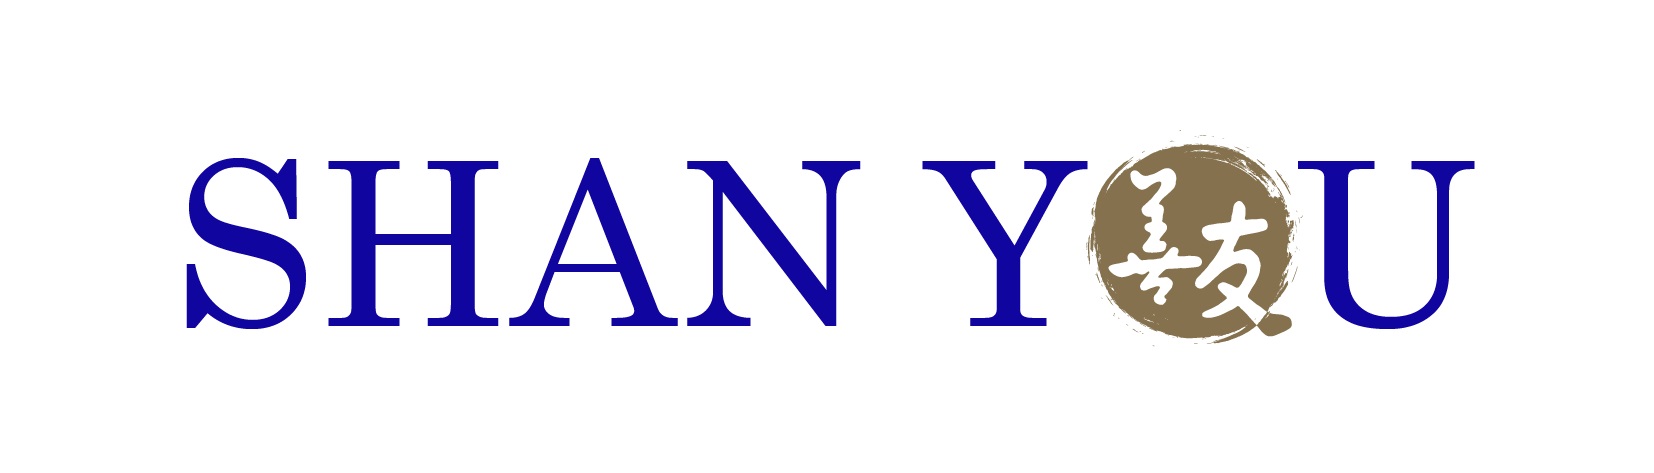 Shan You logo